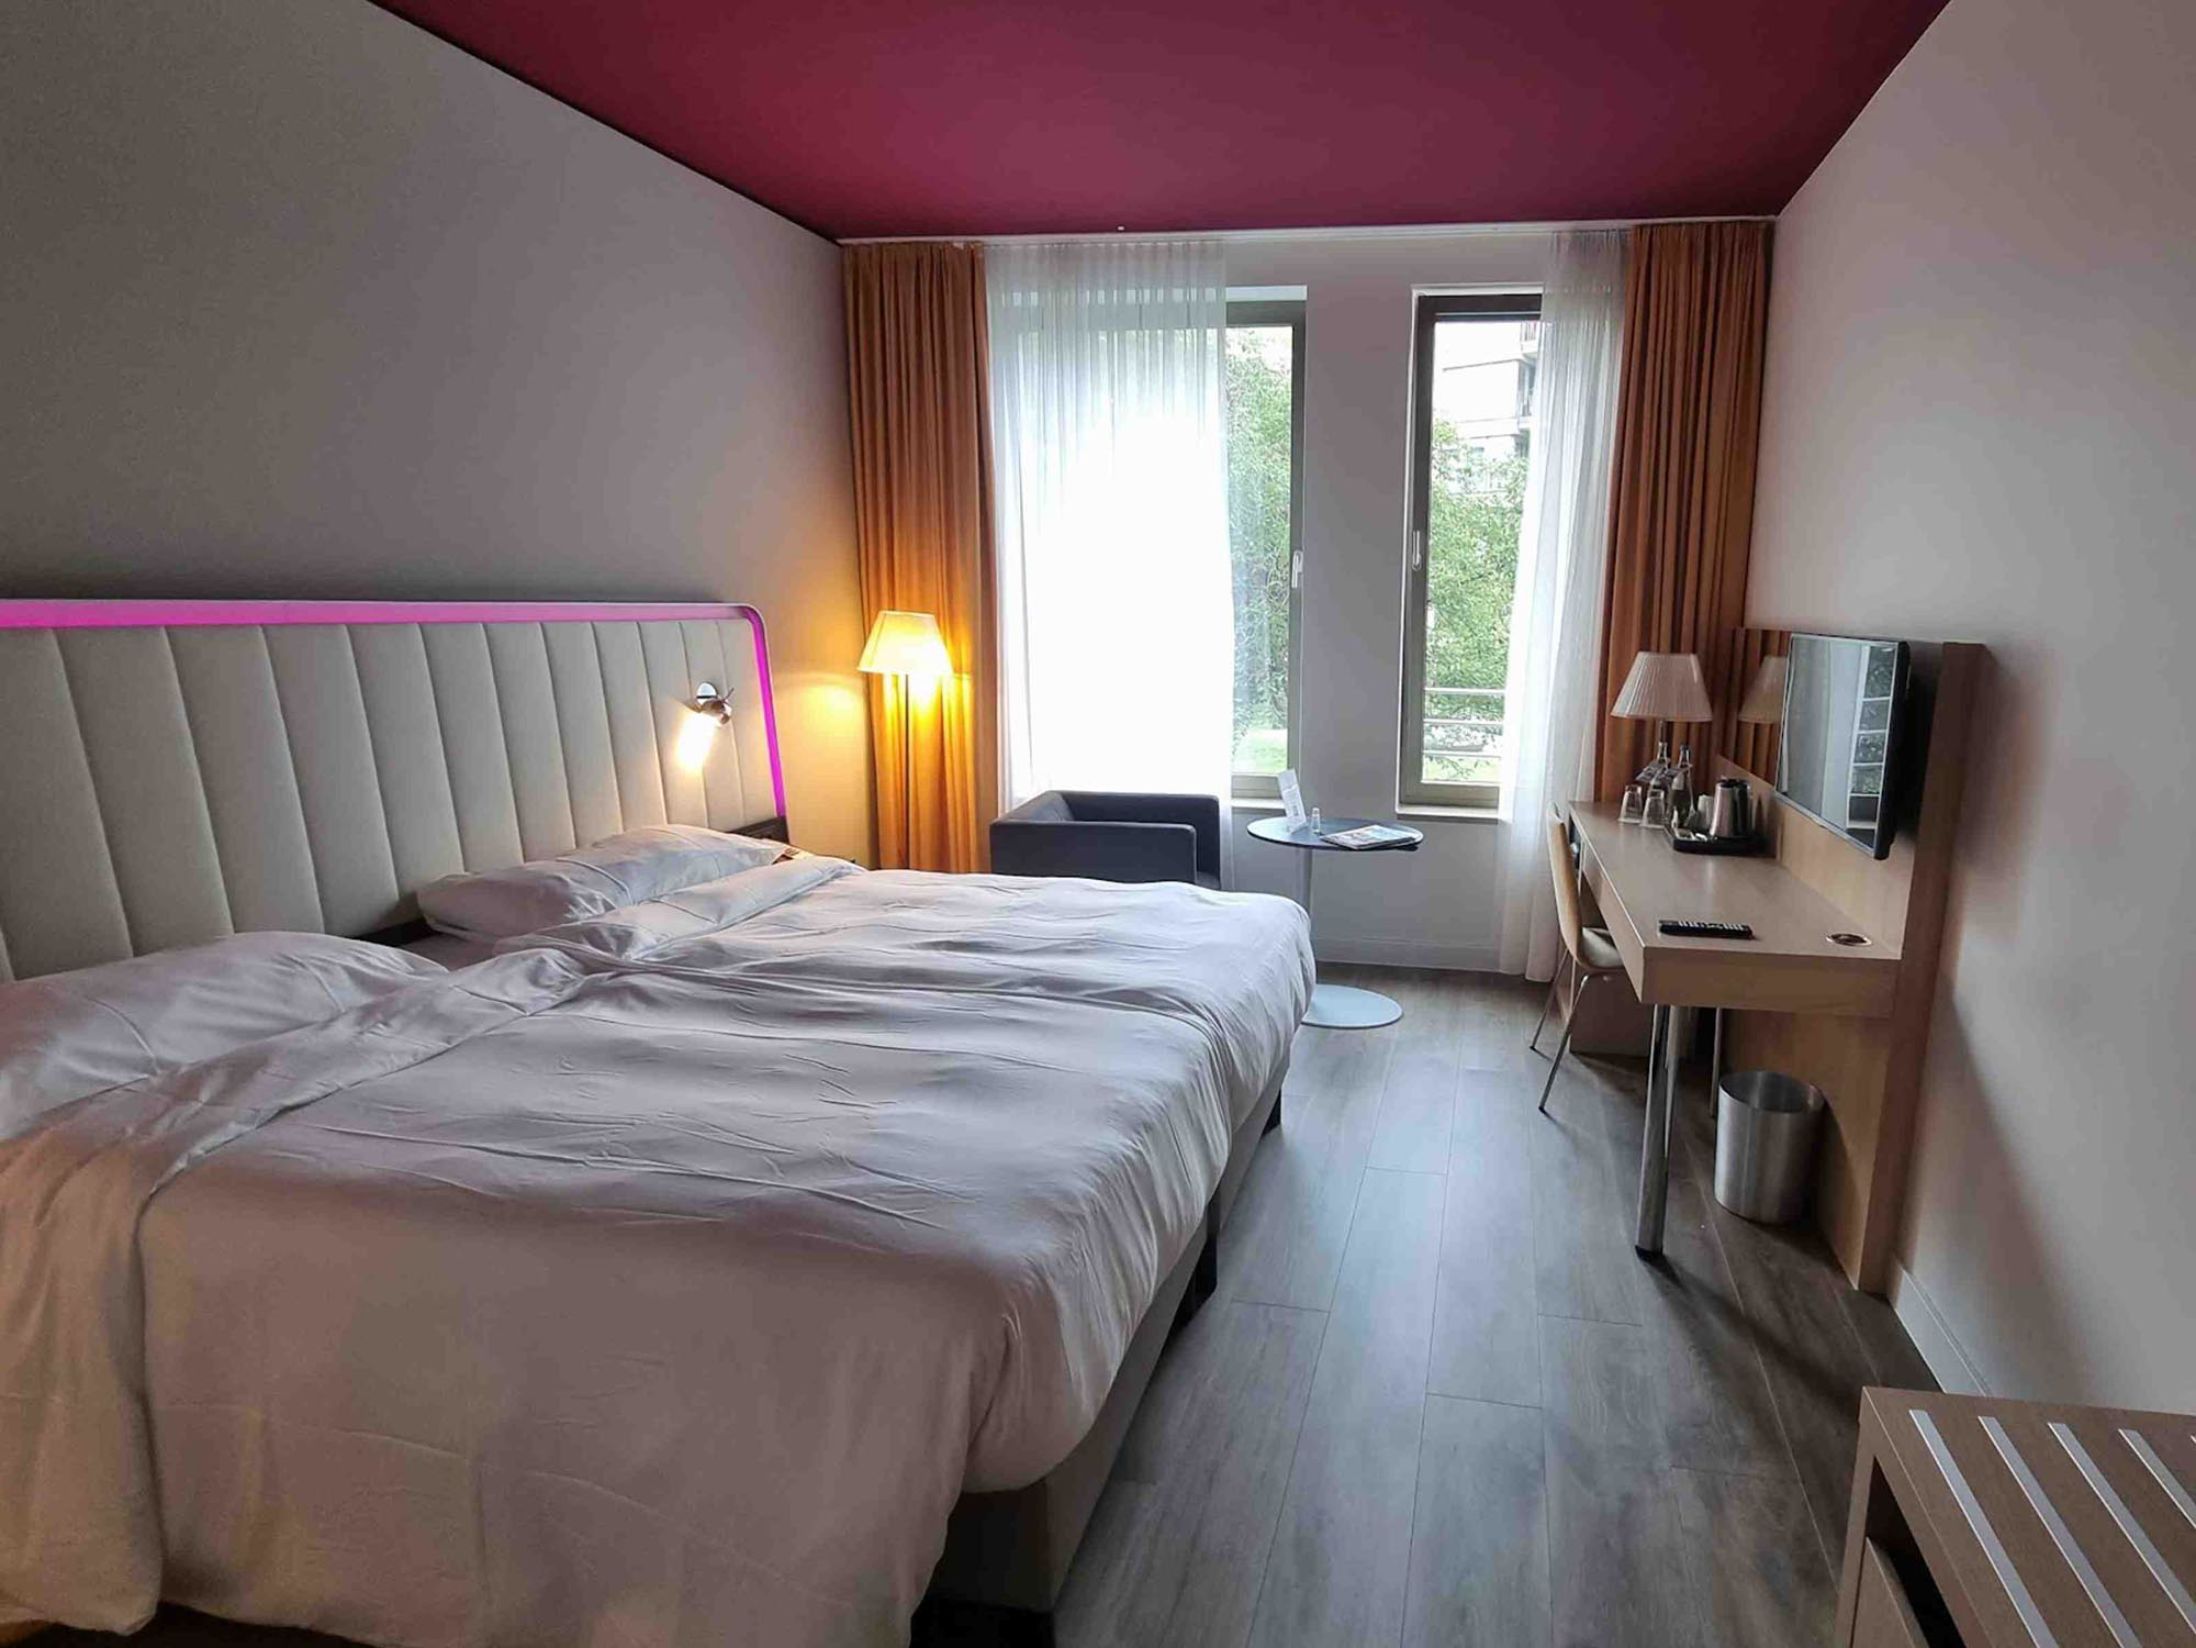 Park Inn by Radisson - Best Hotels in Stuttgart